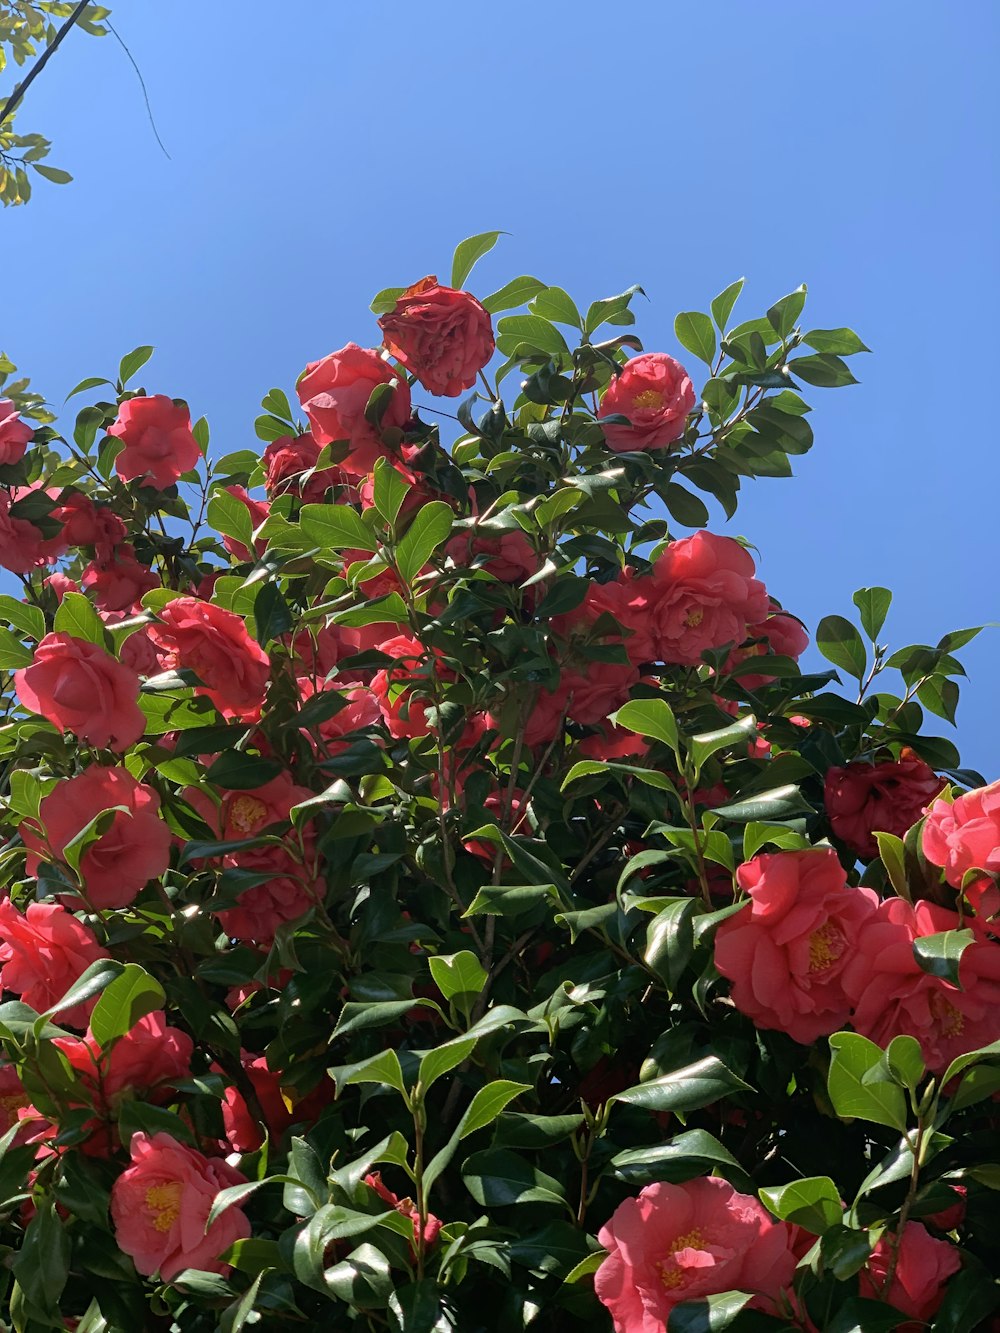 flores vermelhas com folhas verdes sob o céu azul durante o dia